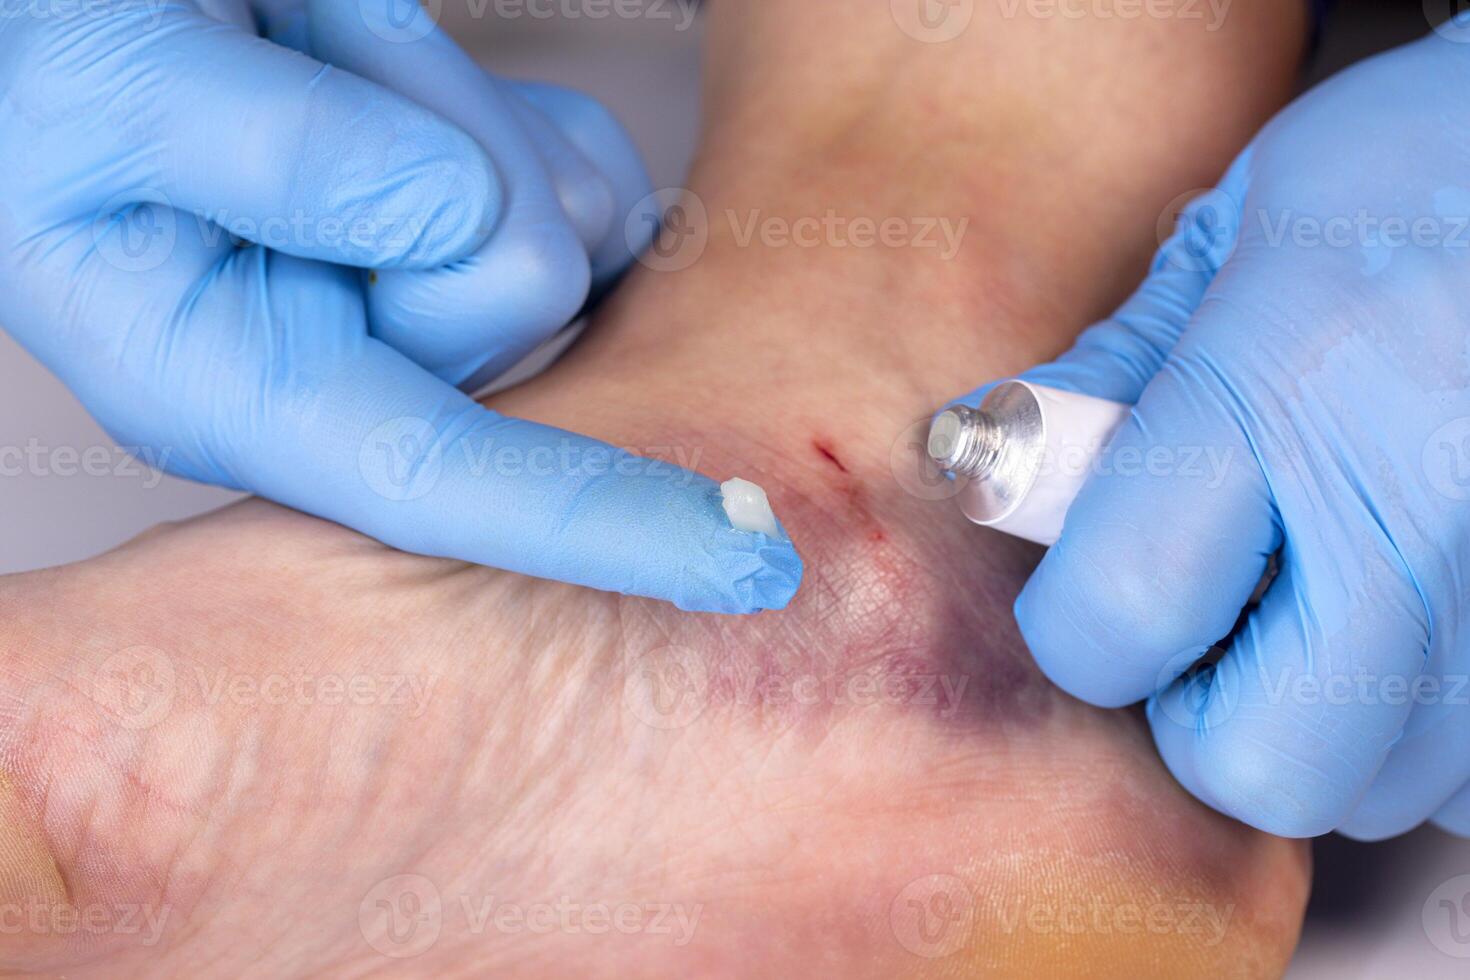 medici mani nel guanti sbavatura medicinale unguento per livido su il pazienti gamba foto